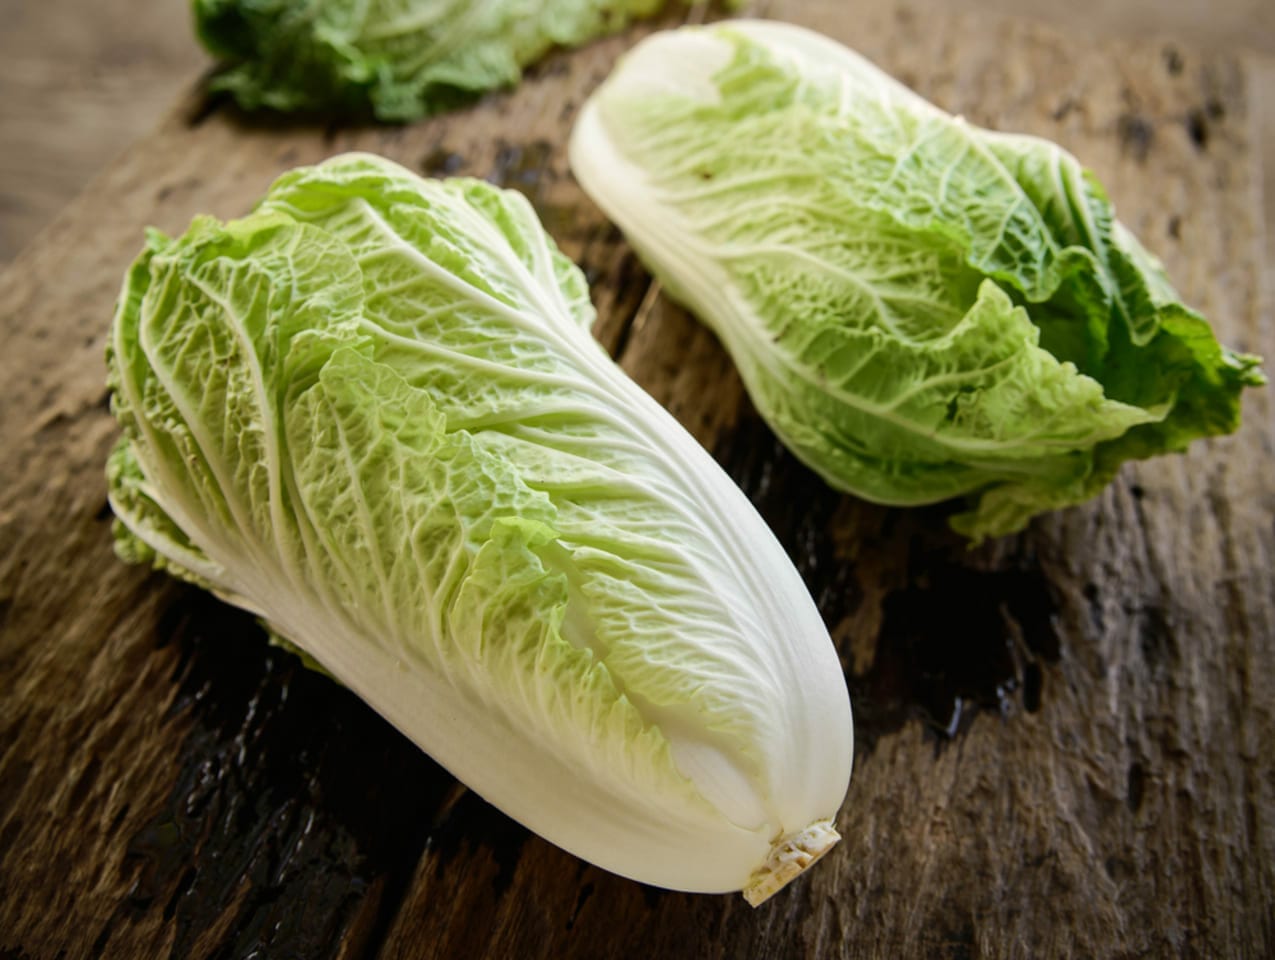 はくさい 値段 ハクサイ 白菜 1キロ平均85円 相場や旬の情報まとめ | Kitchen Infosite